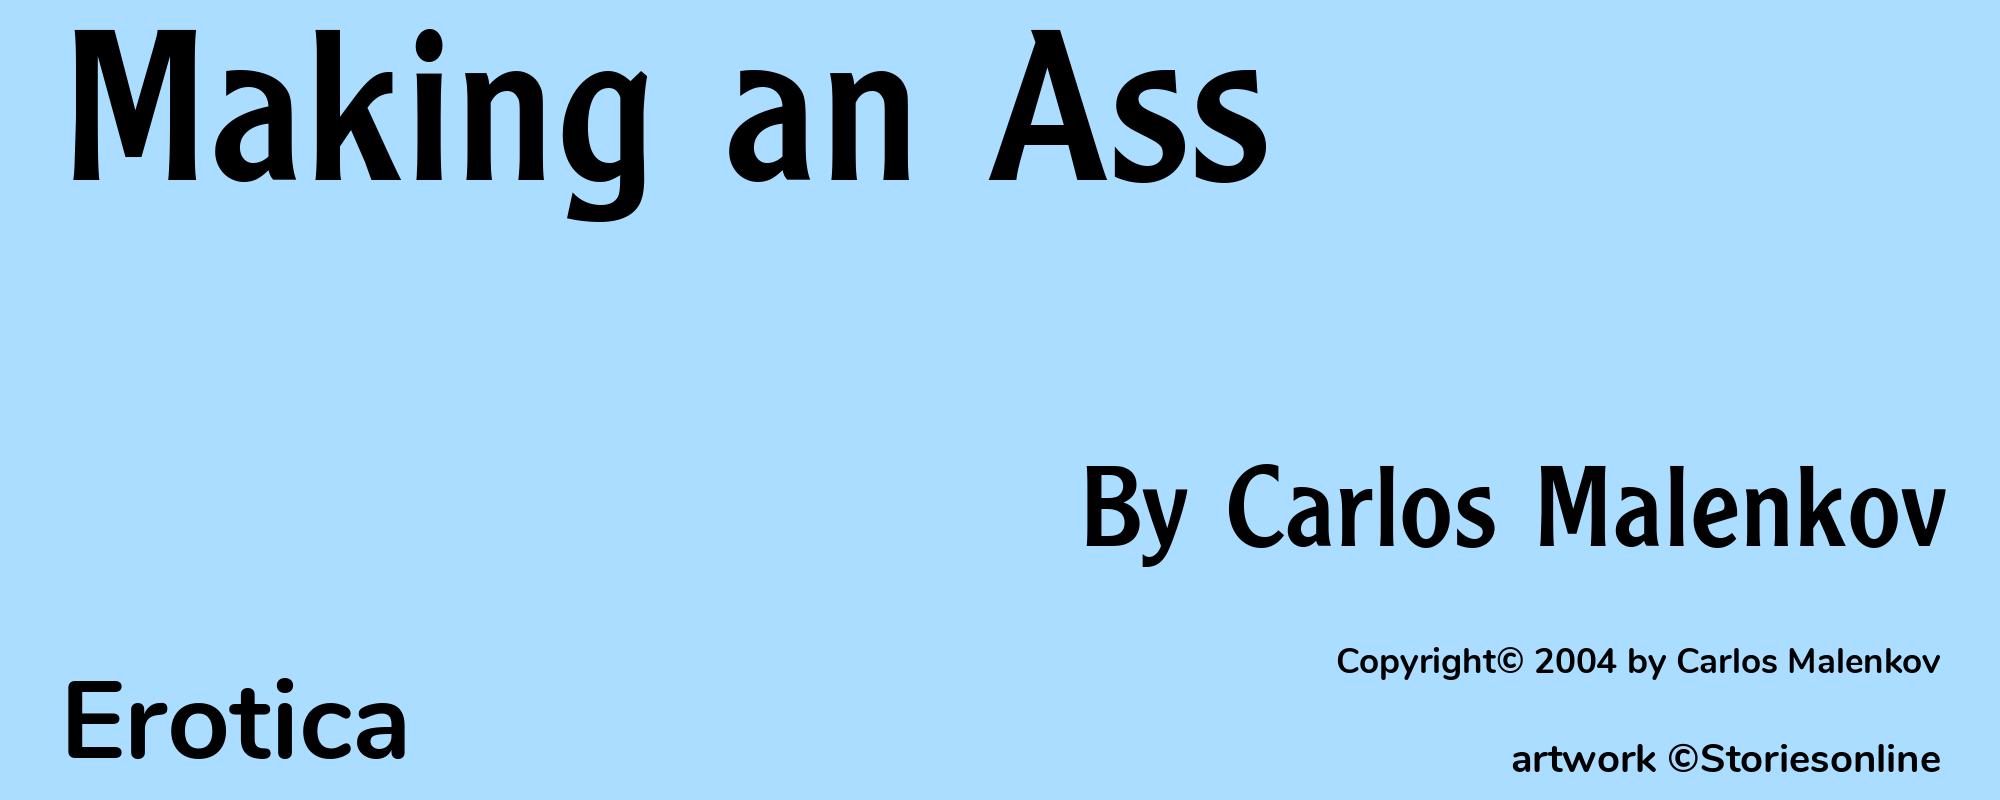 Making an Ass - Cover